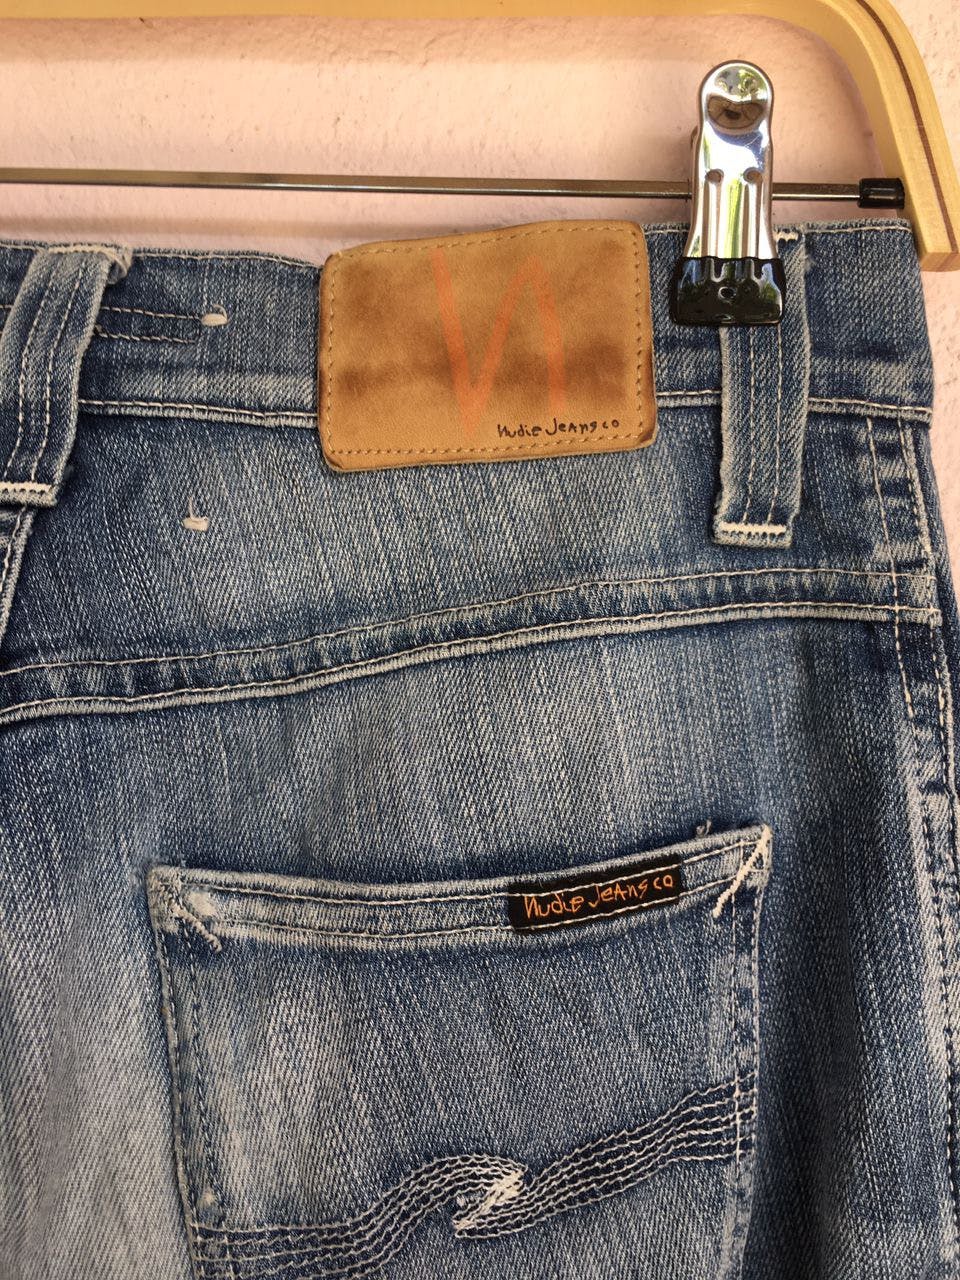 Nudie jeans.co Denim Slim jeans Men’s Pants made in Italy - 11